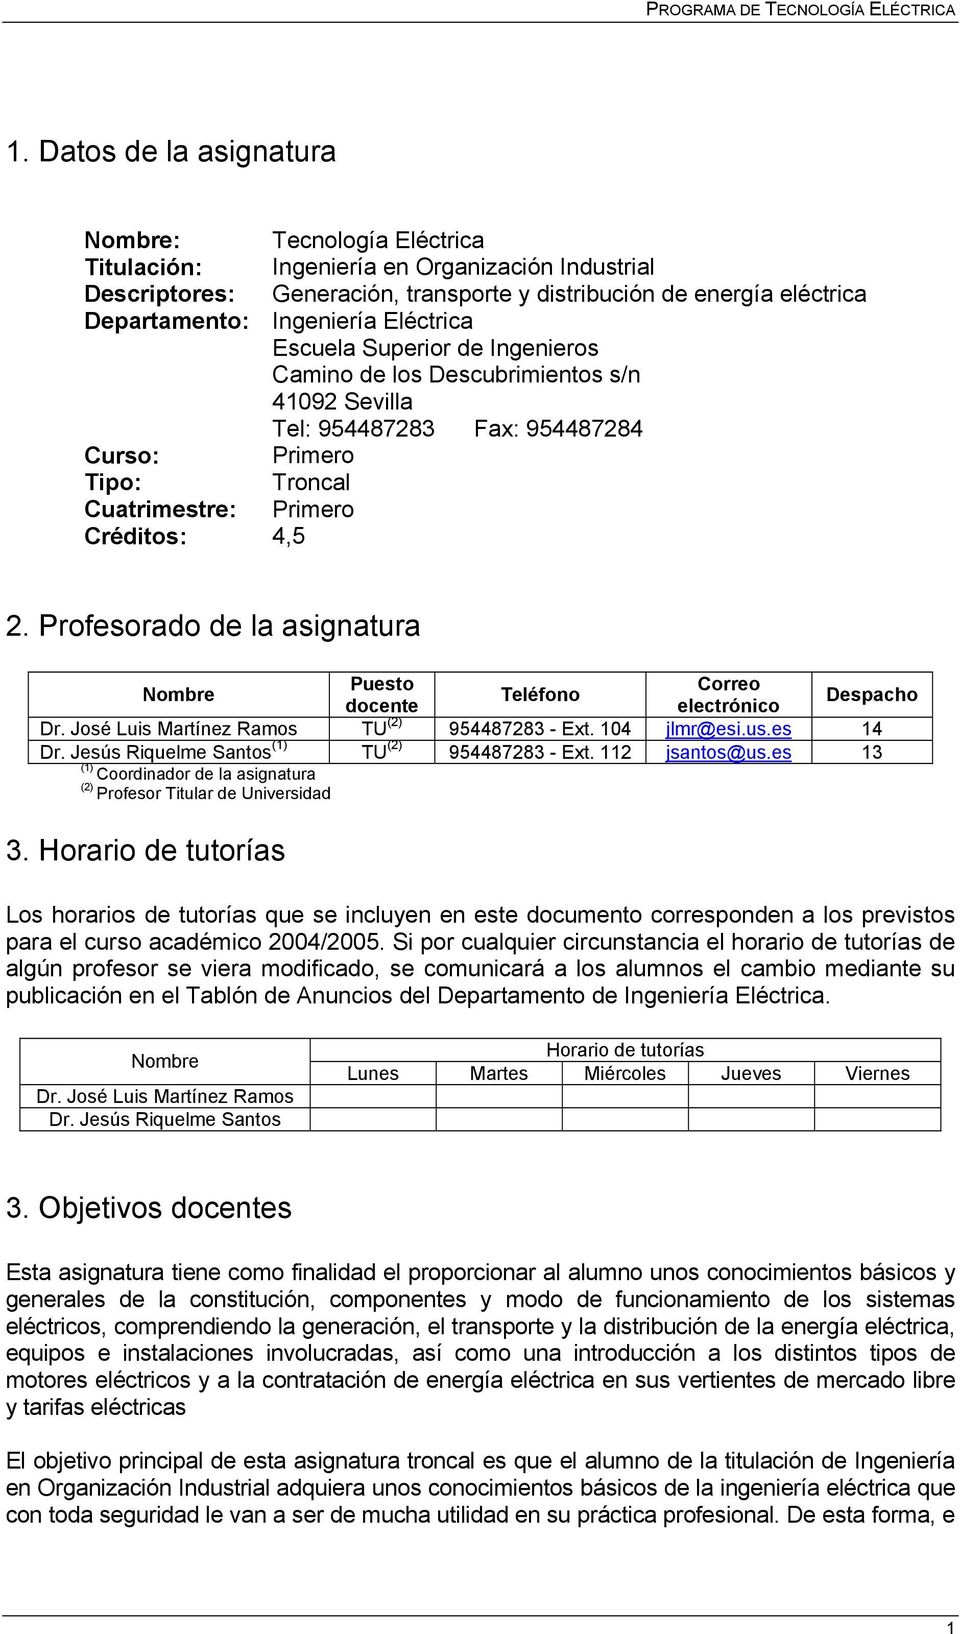 Profesorado de la asignatura Nombre Puesto Correo Teléfono docente electrónico Despacho Dr. José Luis Martínez Ramos TU (2) 954487283 - Ext. 104 jlmr@esi.us.es 14 Dr.